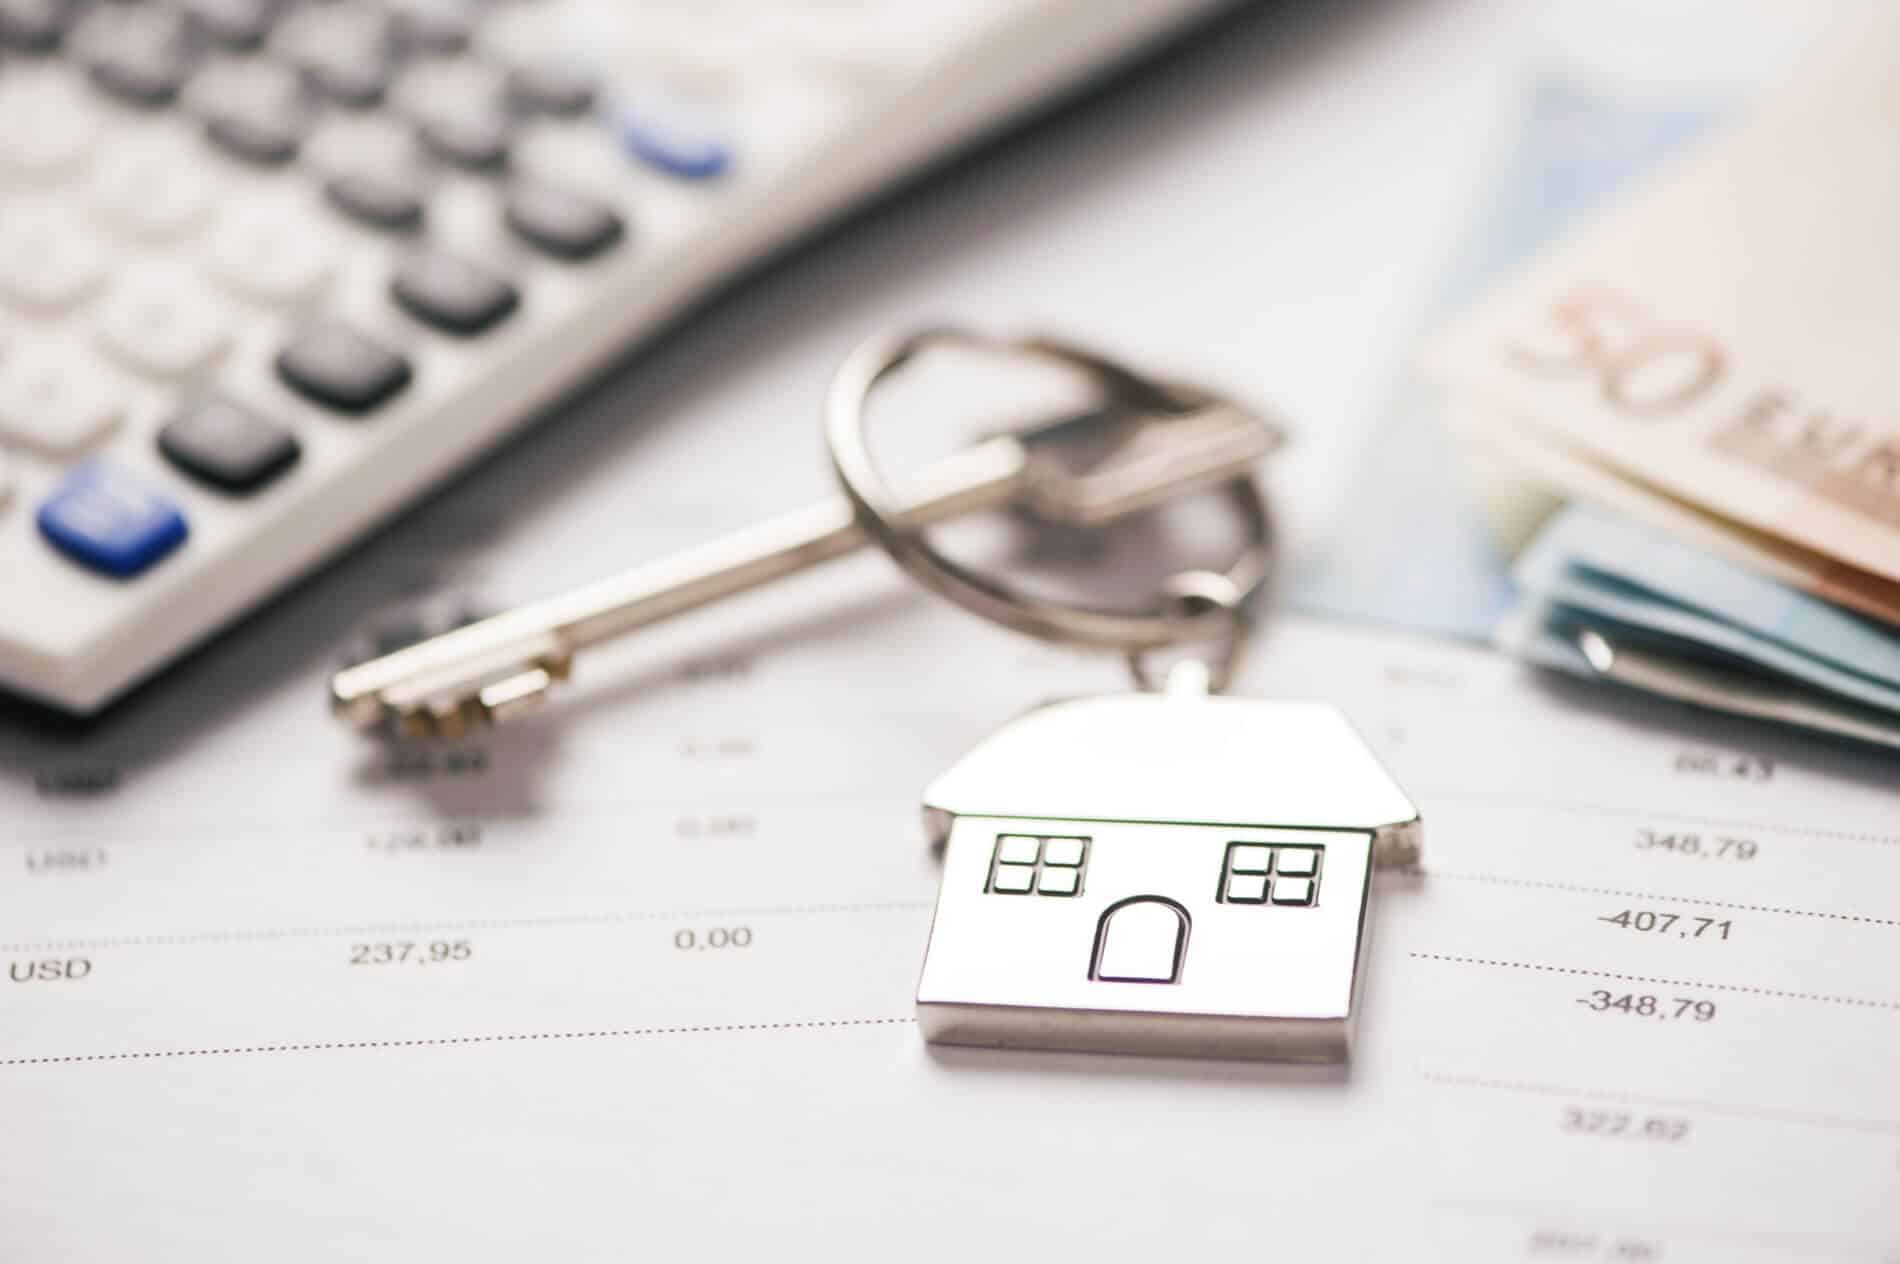 porta-chaves e calculadora que representam os custos durante as várias fases de um crédito habitação